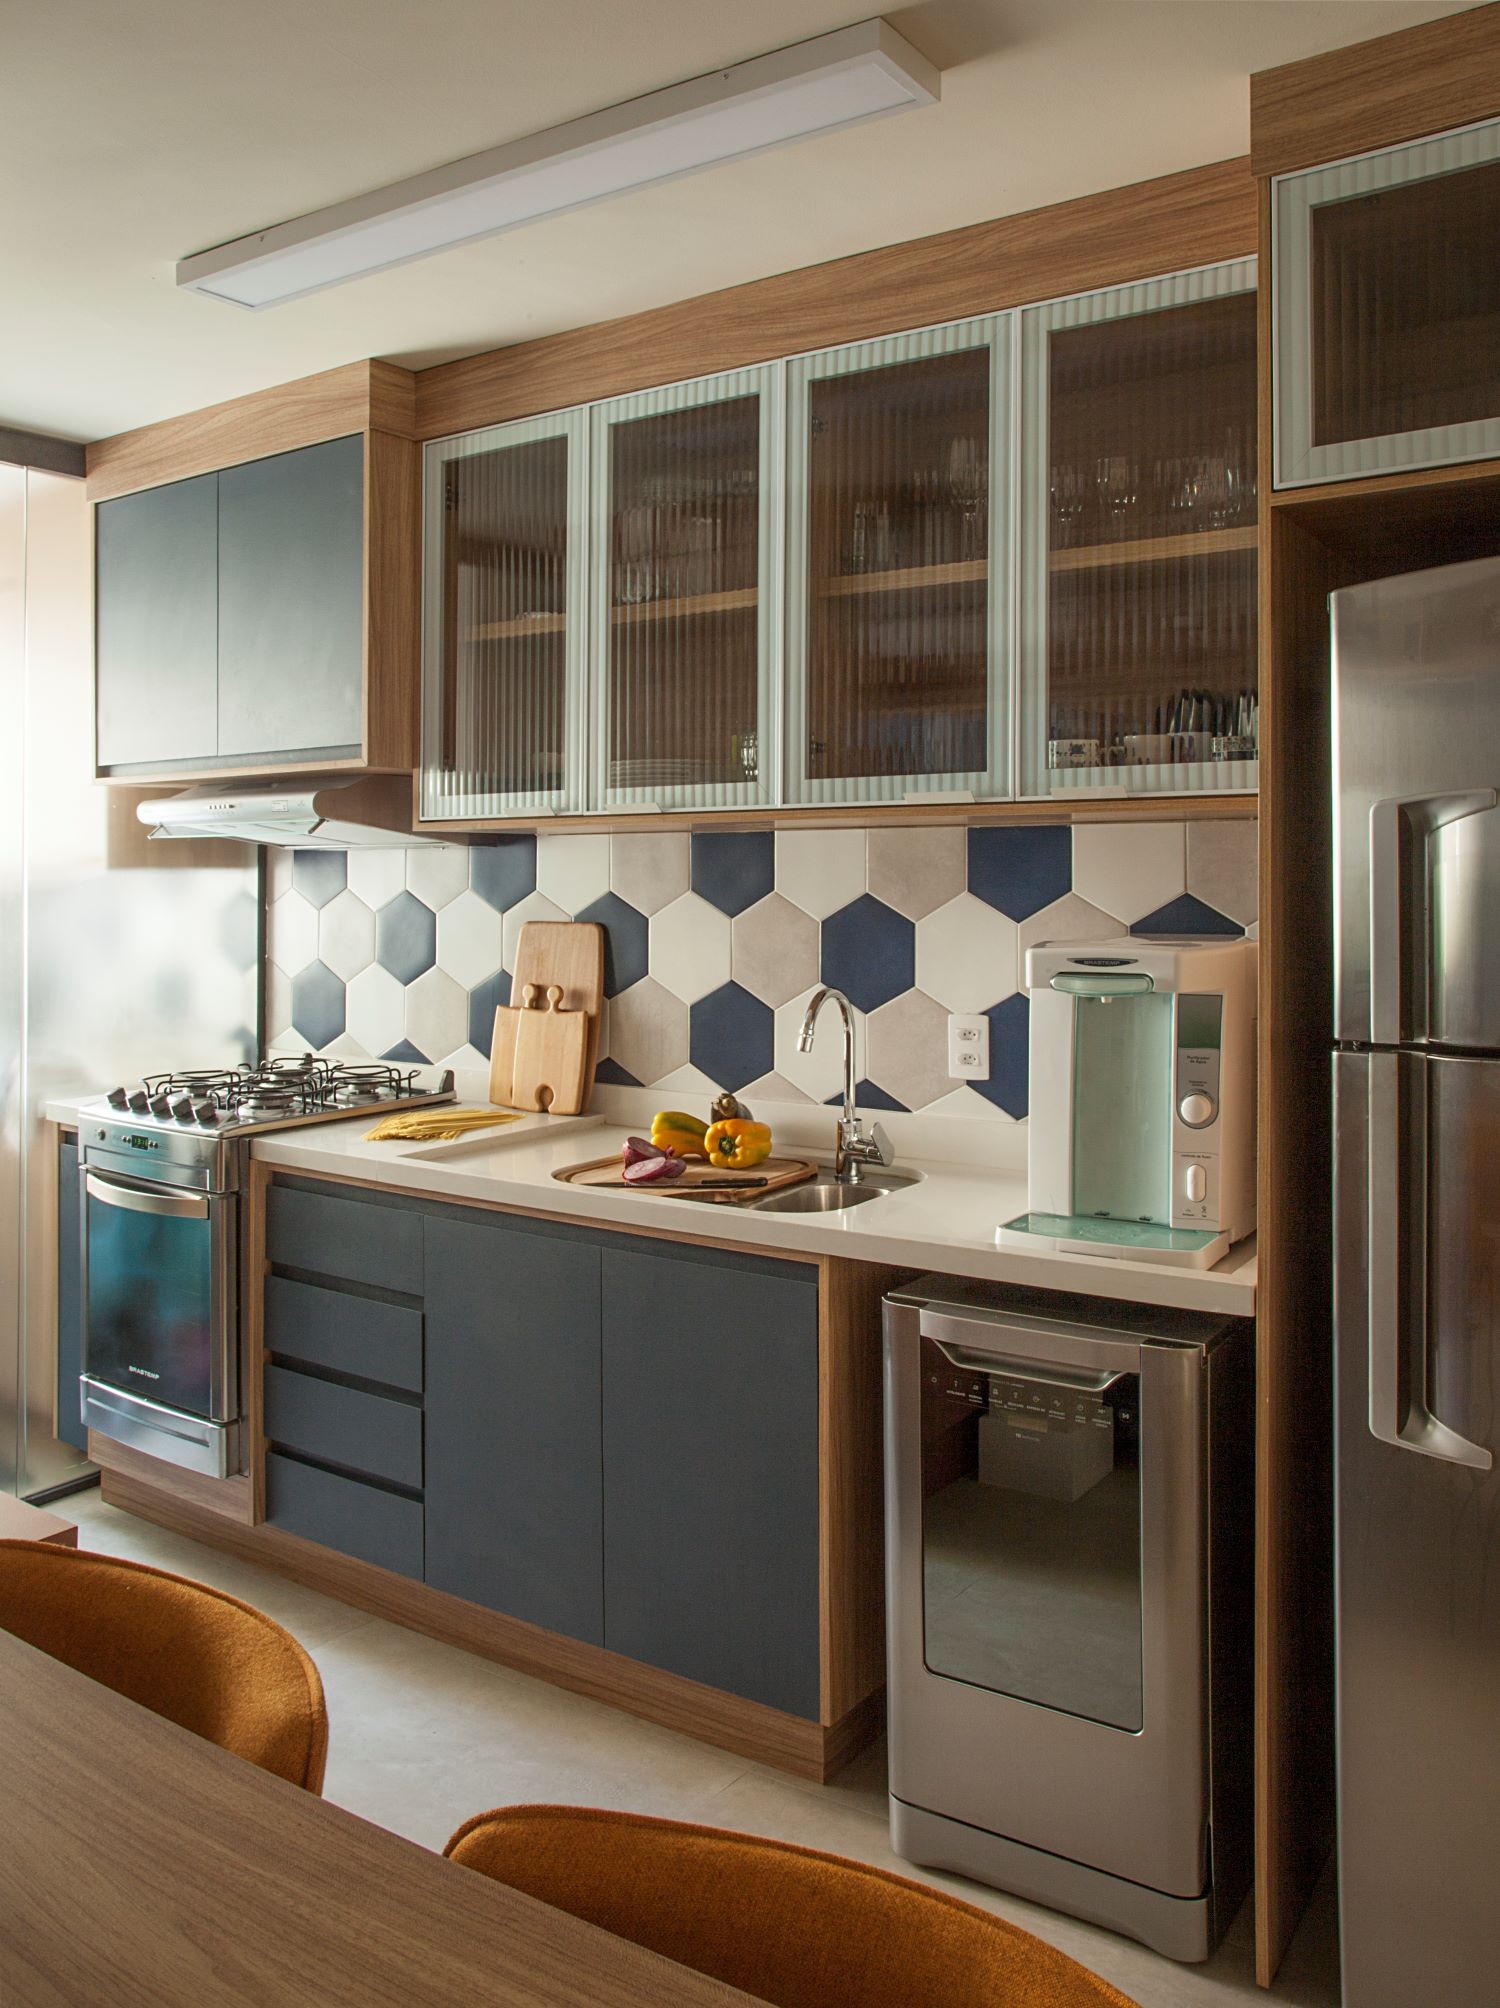 COZINHA | O novo layout da cozinha permite interagir com as pessoas no living. O piso do ambiente é o Stelle Grigio, da Portobello. Revestimento hexagonal azul, cimento e white, da Ceral (Foto: Divulgação / Luis Gomes)